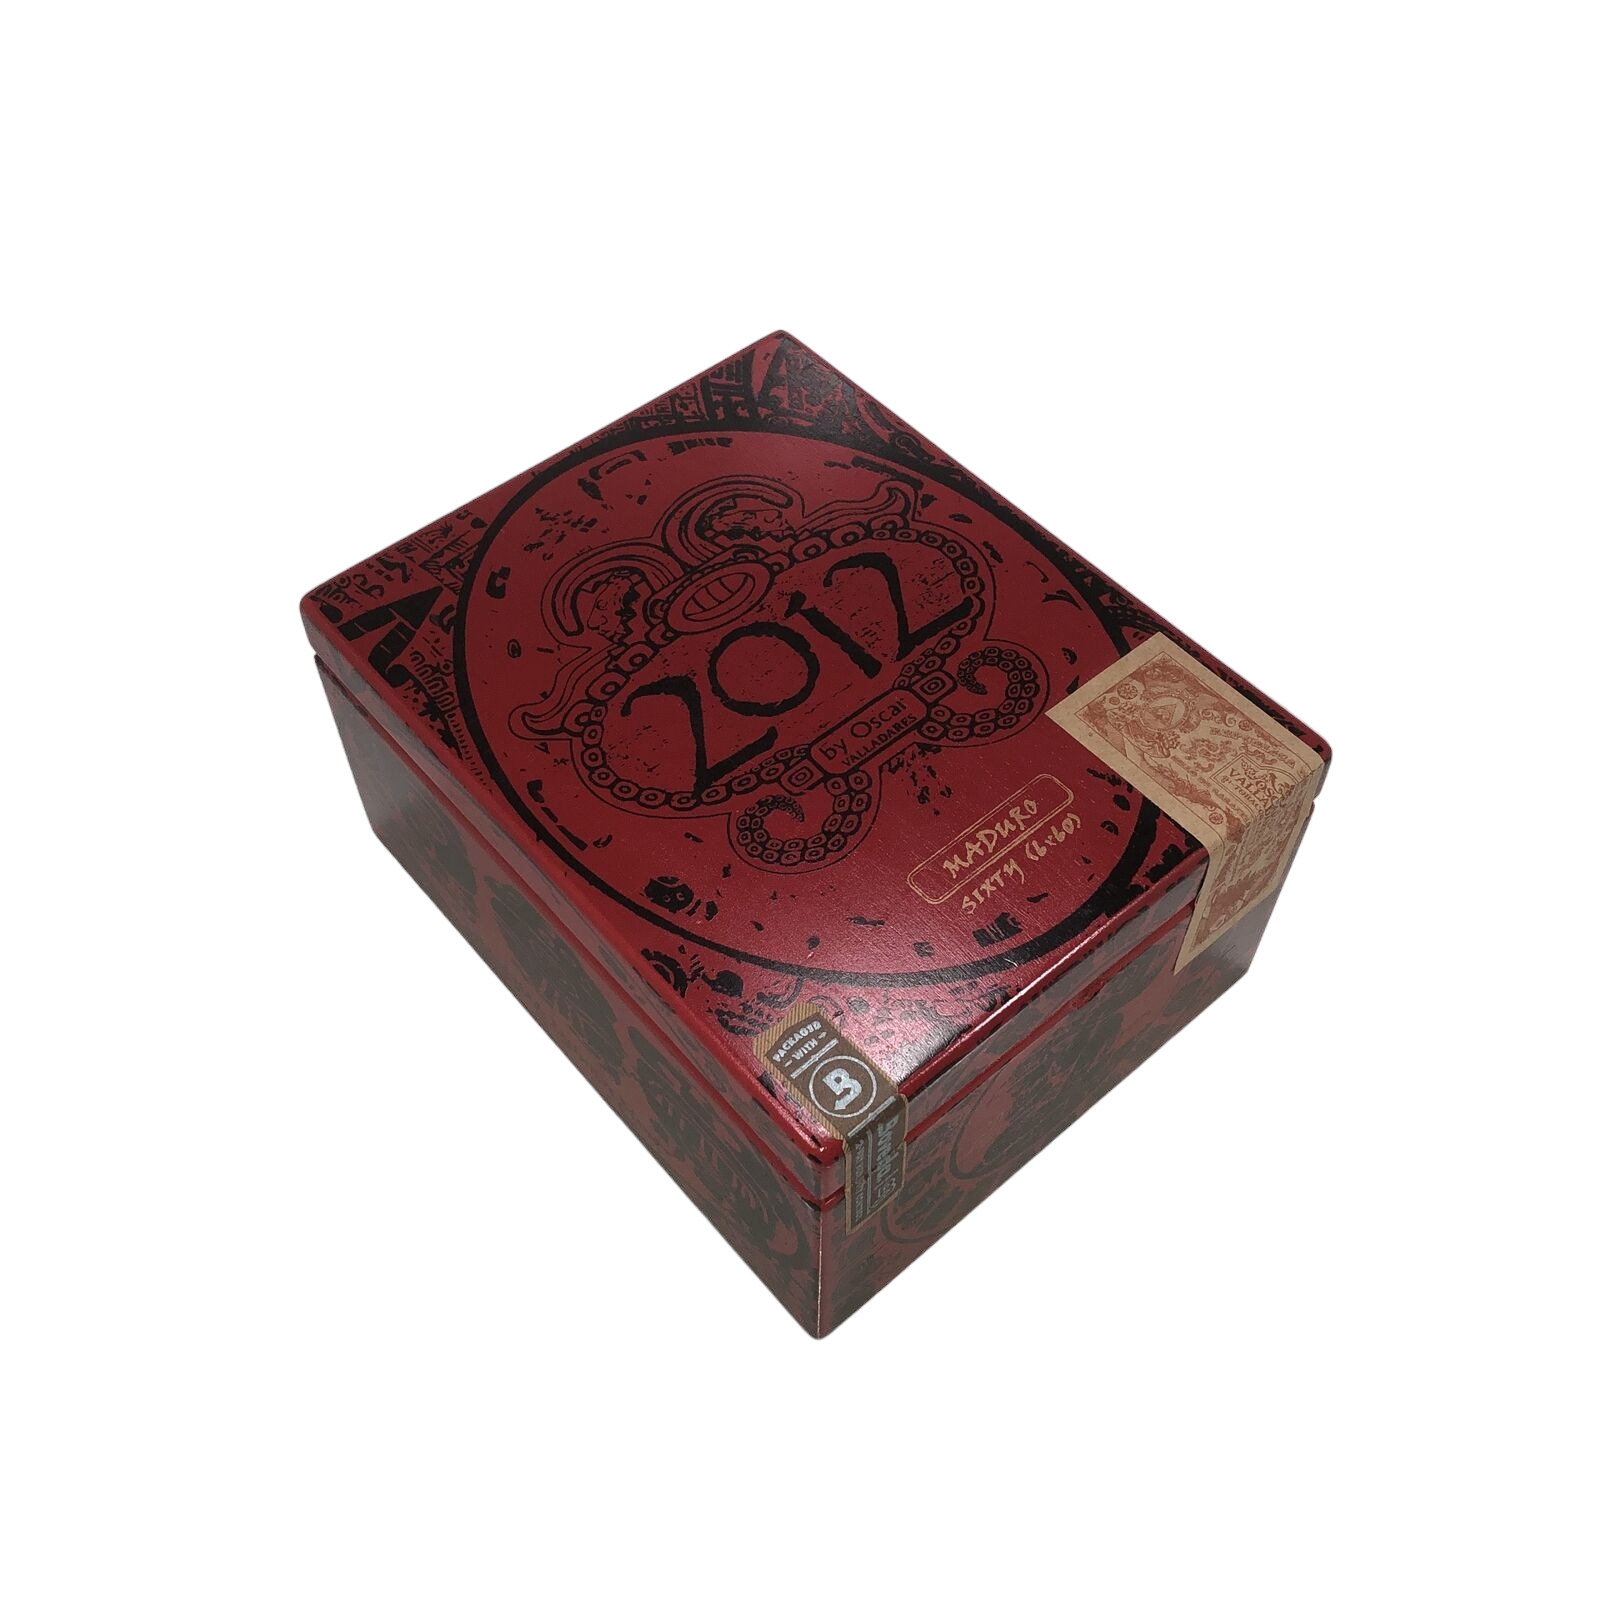 2012 By Oscar Valladares Maduro Sixty Empty Wooden Cigar Box 5.5x6.75x3.5